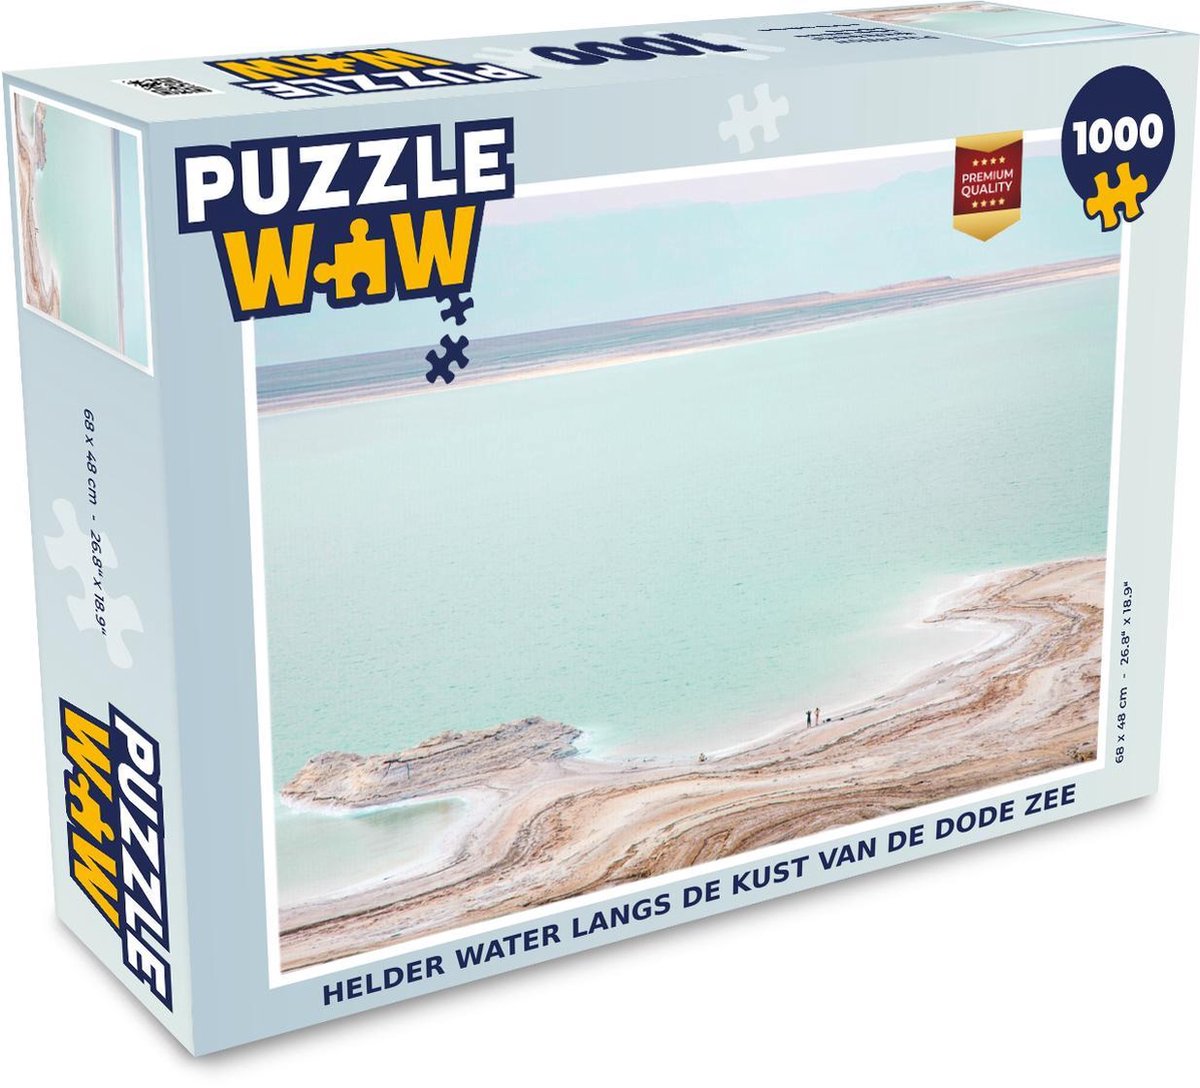 Afbeelding van product Puzzel 1000 stukjes volwassenen Dode zee 1000 stukjes - Helder water langs de kust van de dode zee puzzel 1000 stukjes - PuzzleWow heeft +100000 puzzels